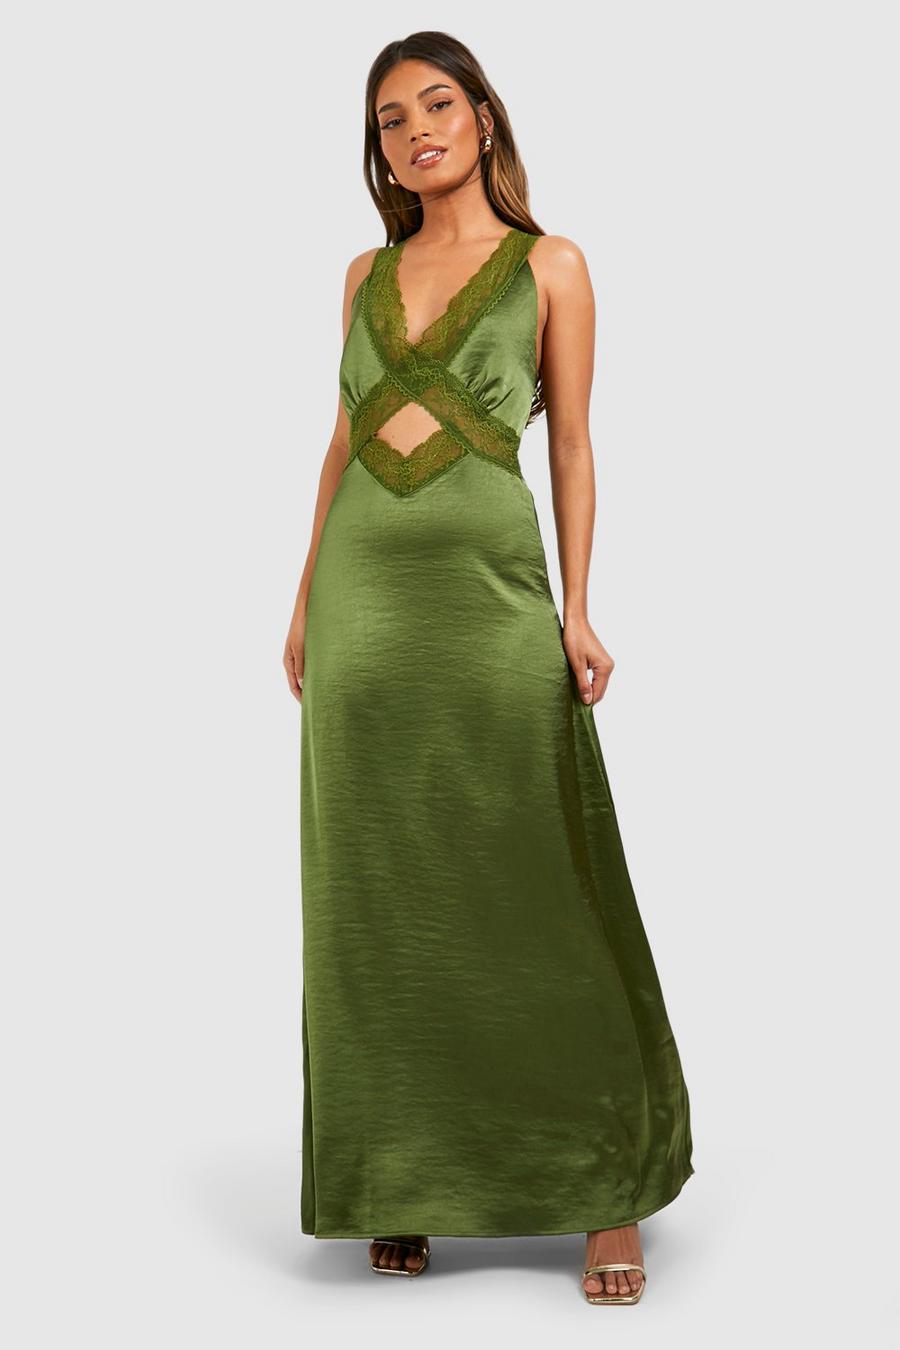 Olive green Satin Lace Trim Maxi Slip Dress